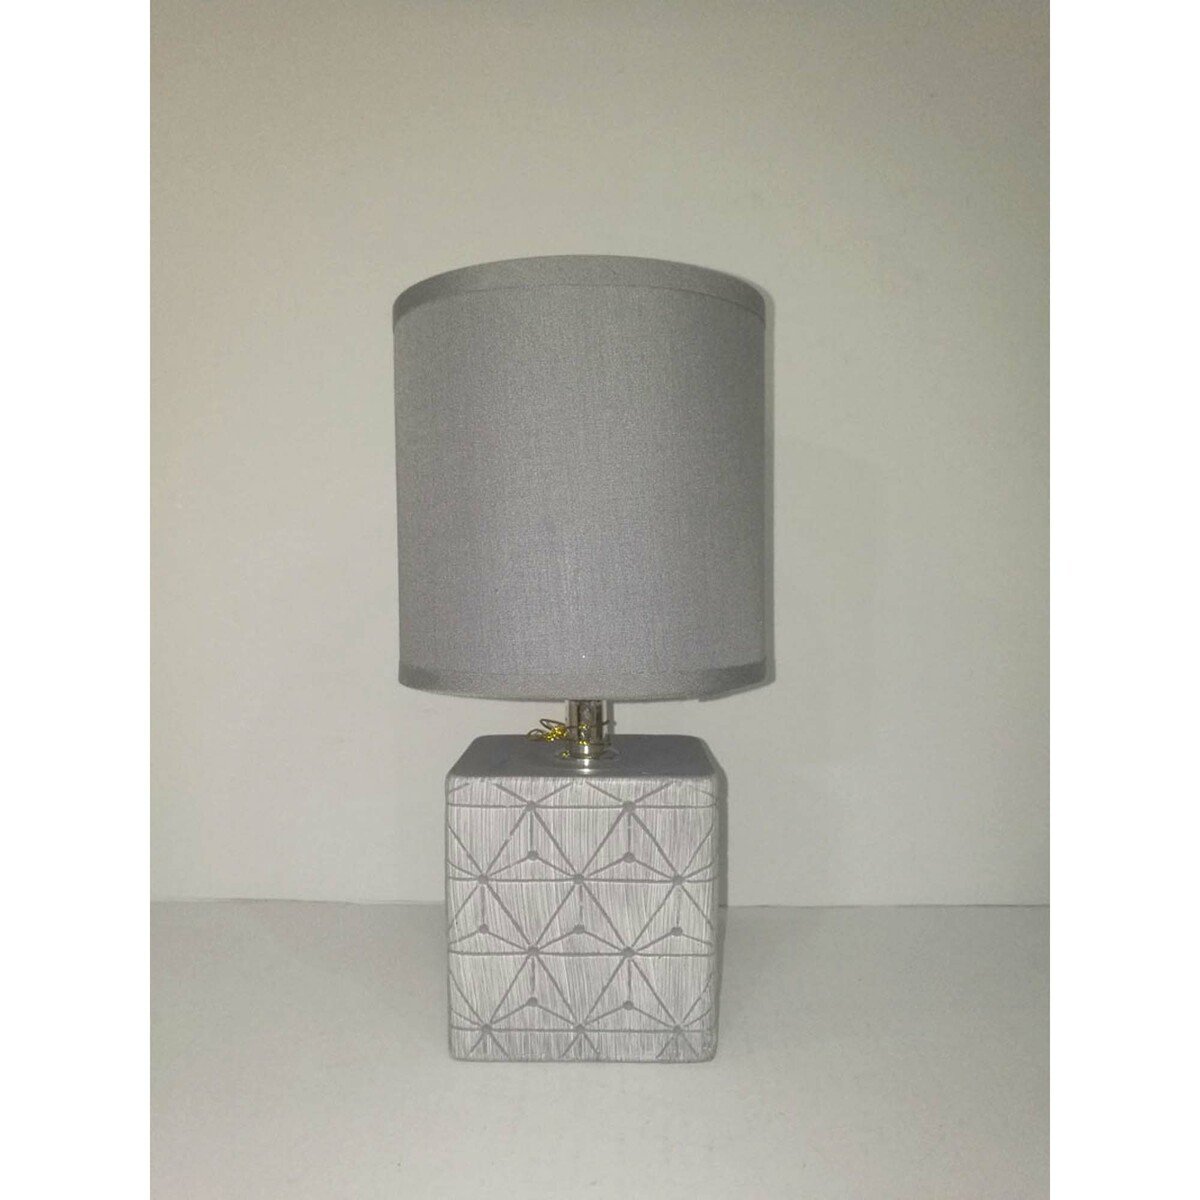 Maple Leaf Ceramic Table Lamp HS8148PRM 13x27cm Assorted